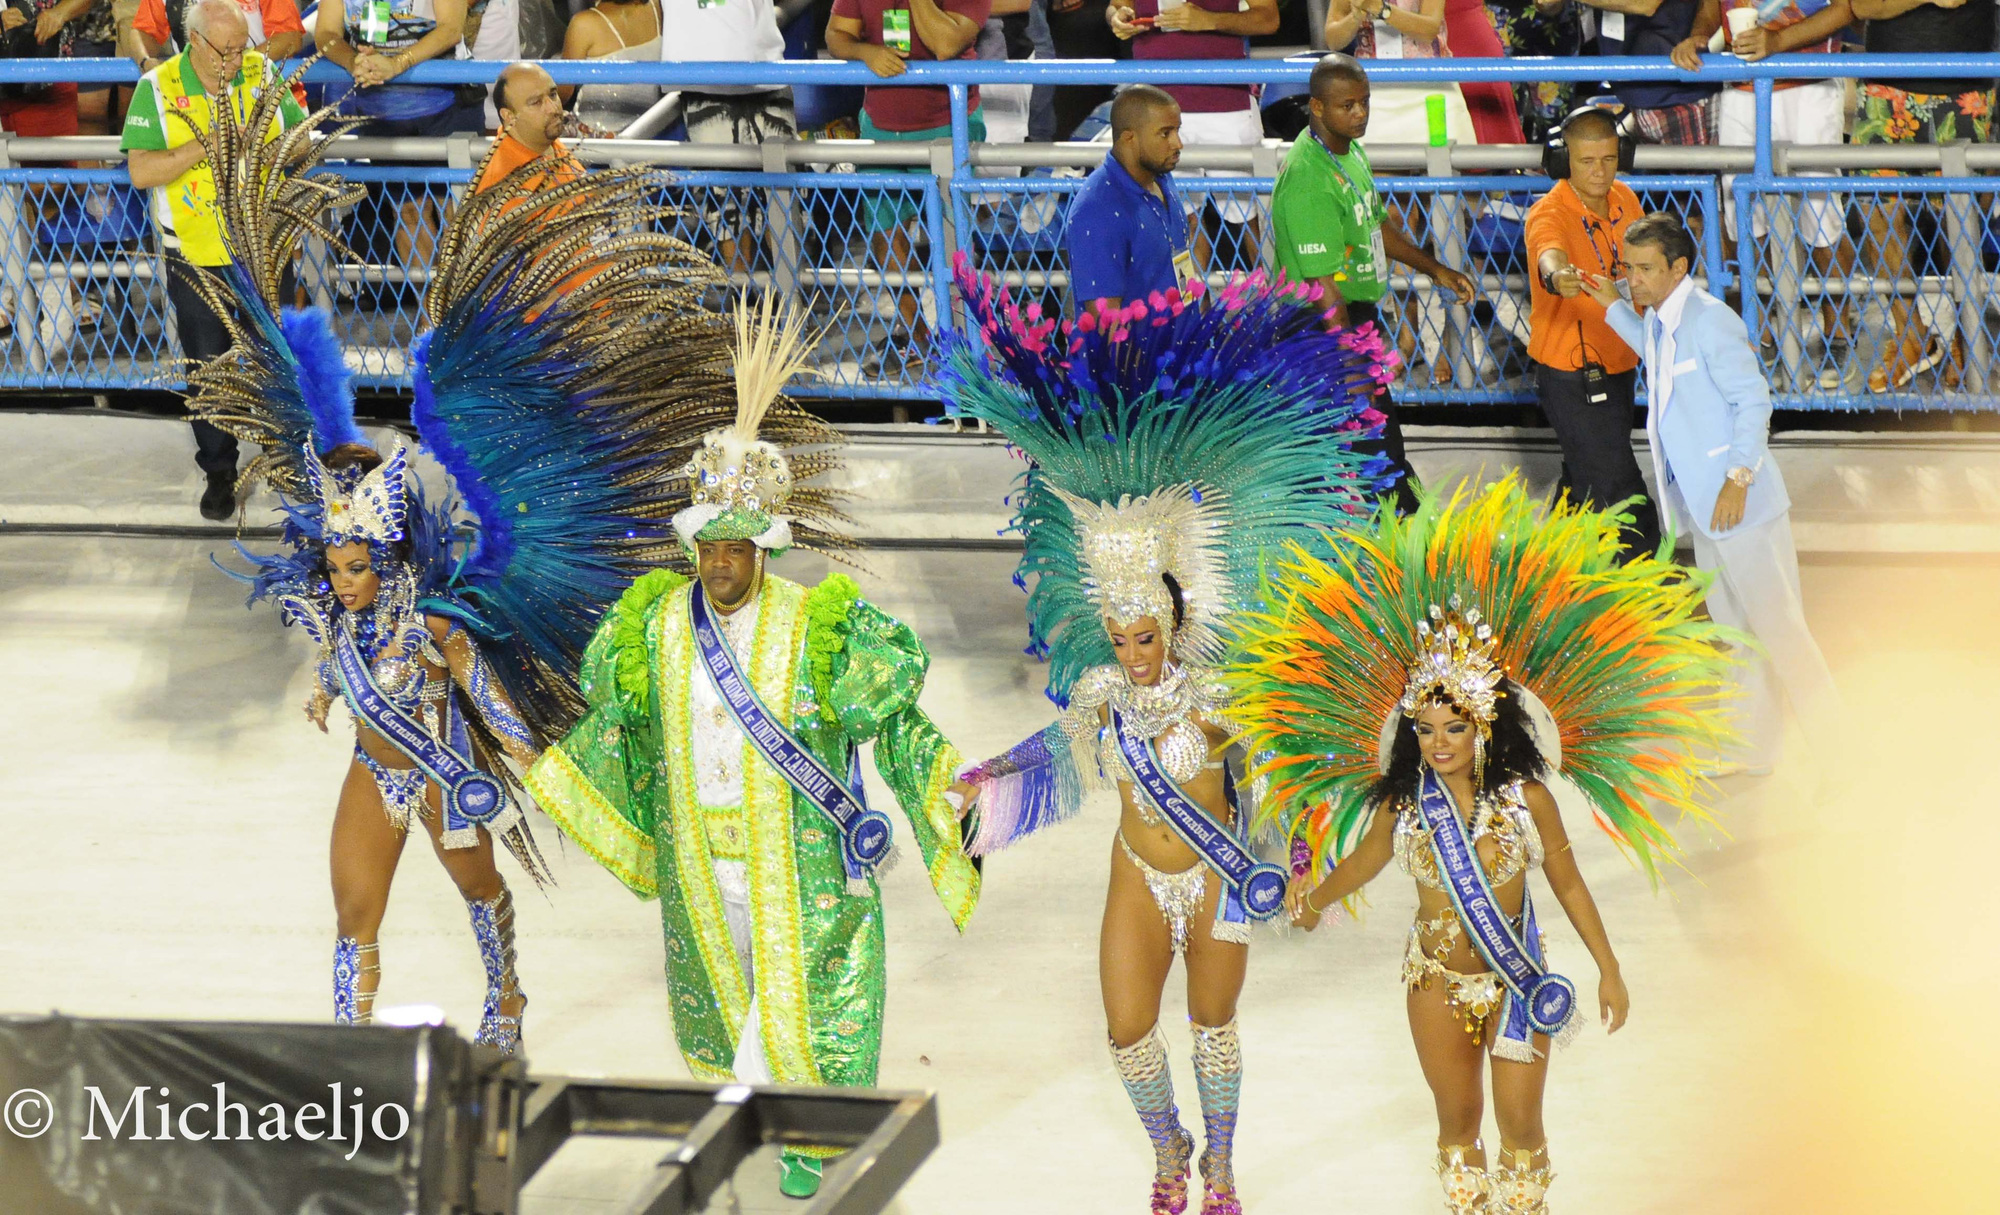 Vũ công bốc lửa, nhạc Samba sôi động và những điều đặc biệt chưa tiết lộ tại lễ hội hóa trang Brazil  - Ảnh 2.